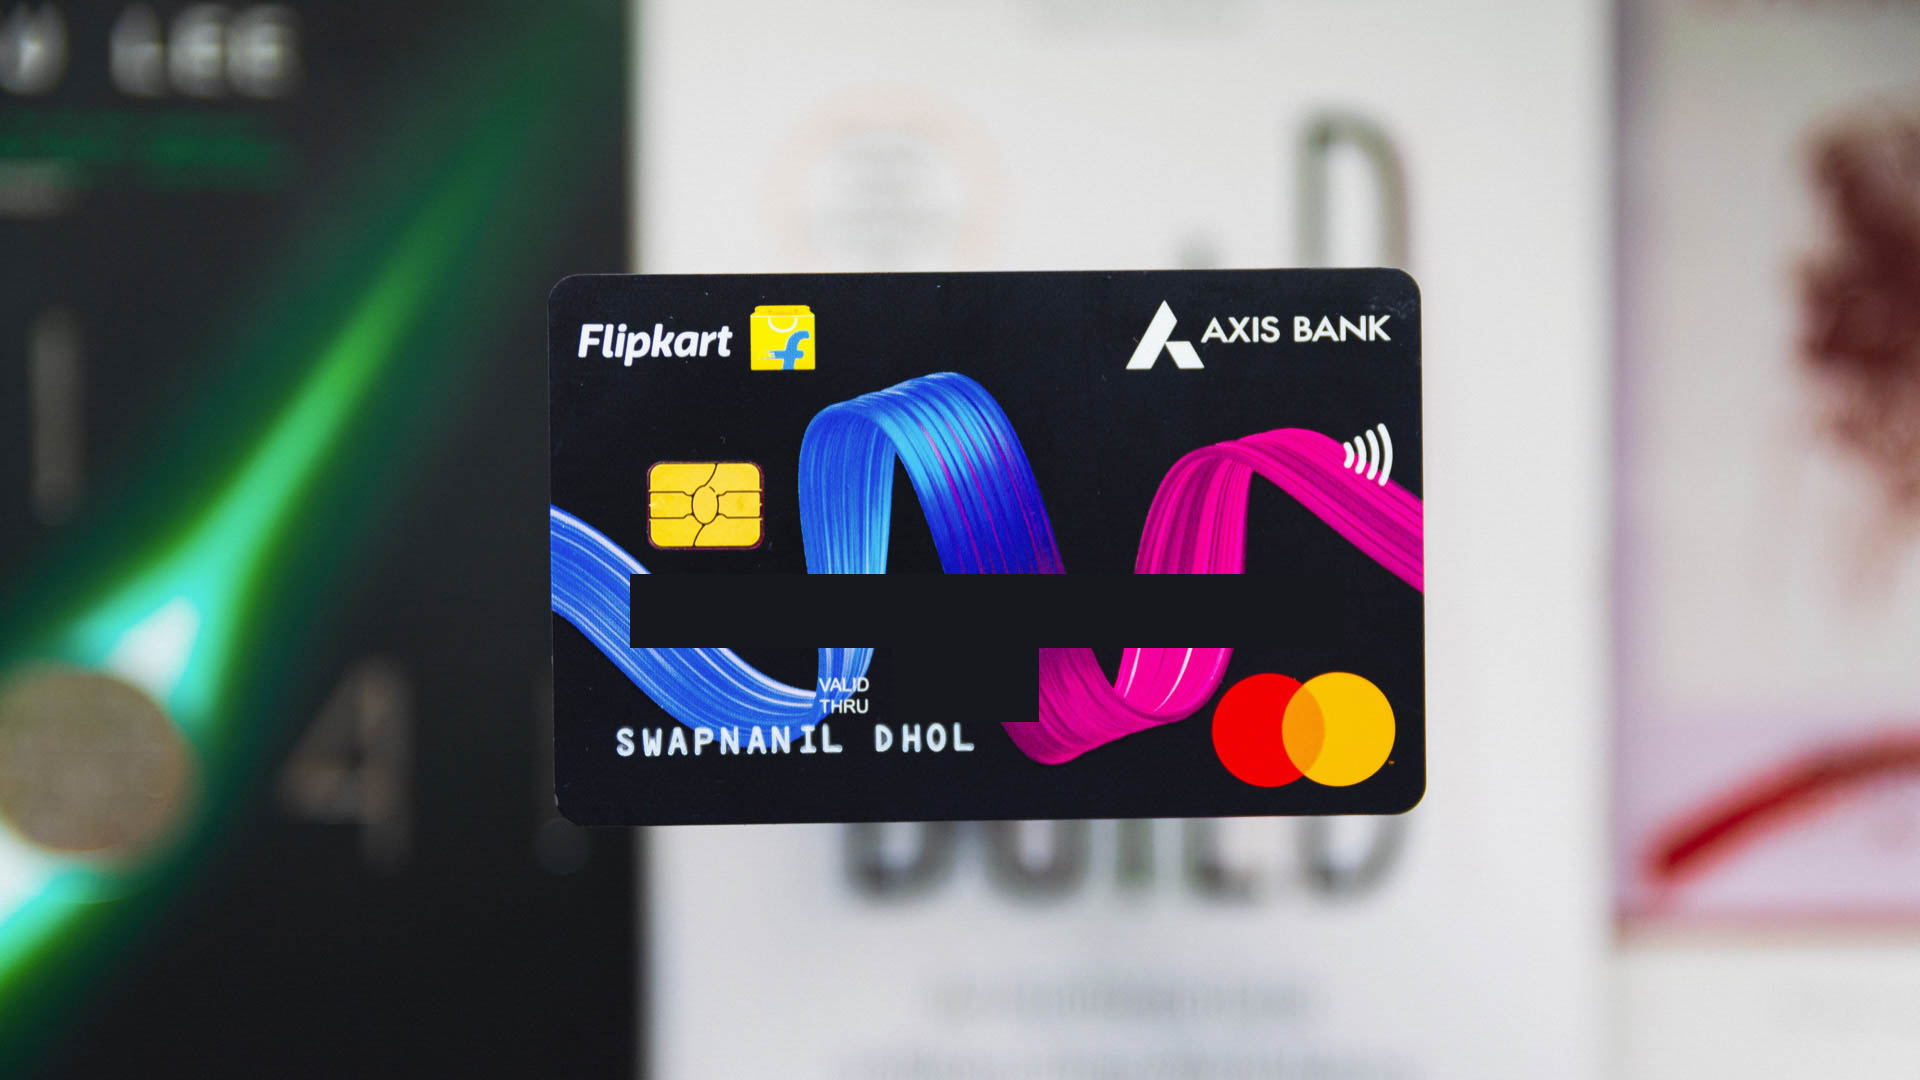 Flipkart Axis Bank card